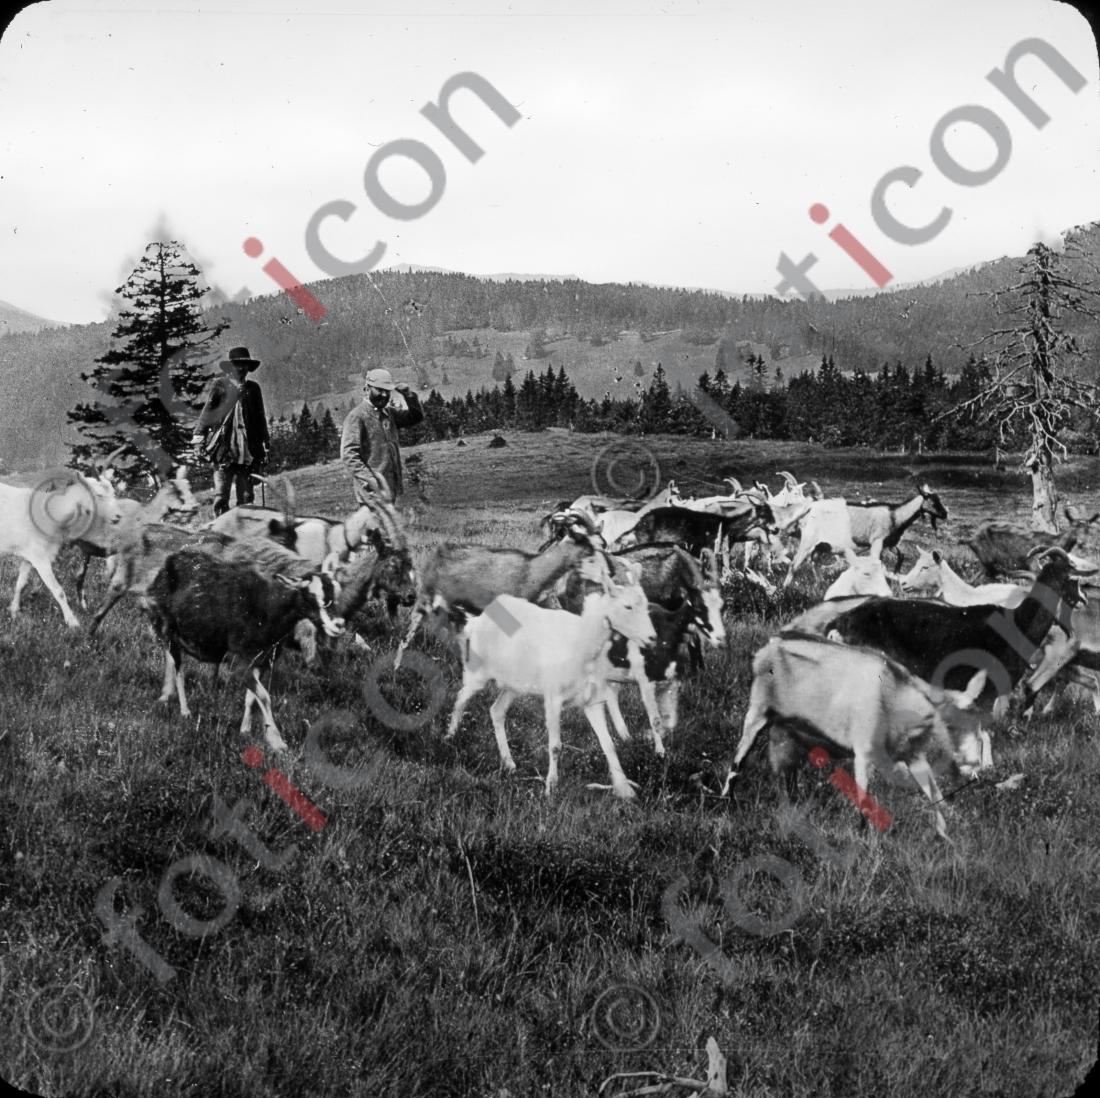 Ziegen im Schwarzwald | Goats in the Black Forest - Foto foticon-simon-127-017-sw.jpg | foticon.de - Bilddatenbank für Motive aus Geschichte und Kultur